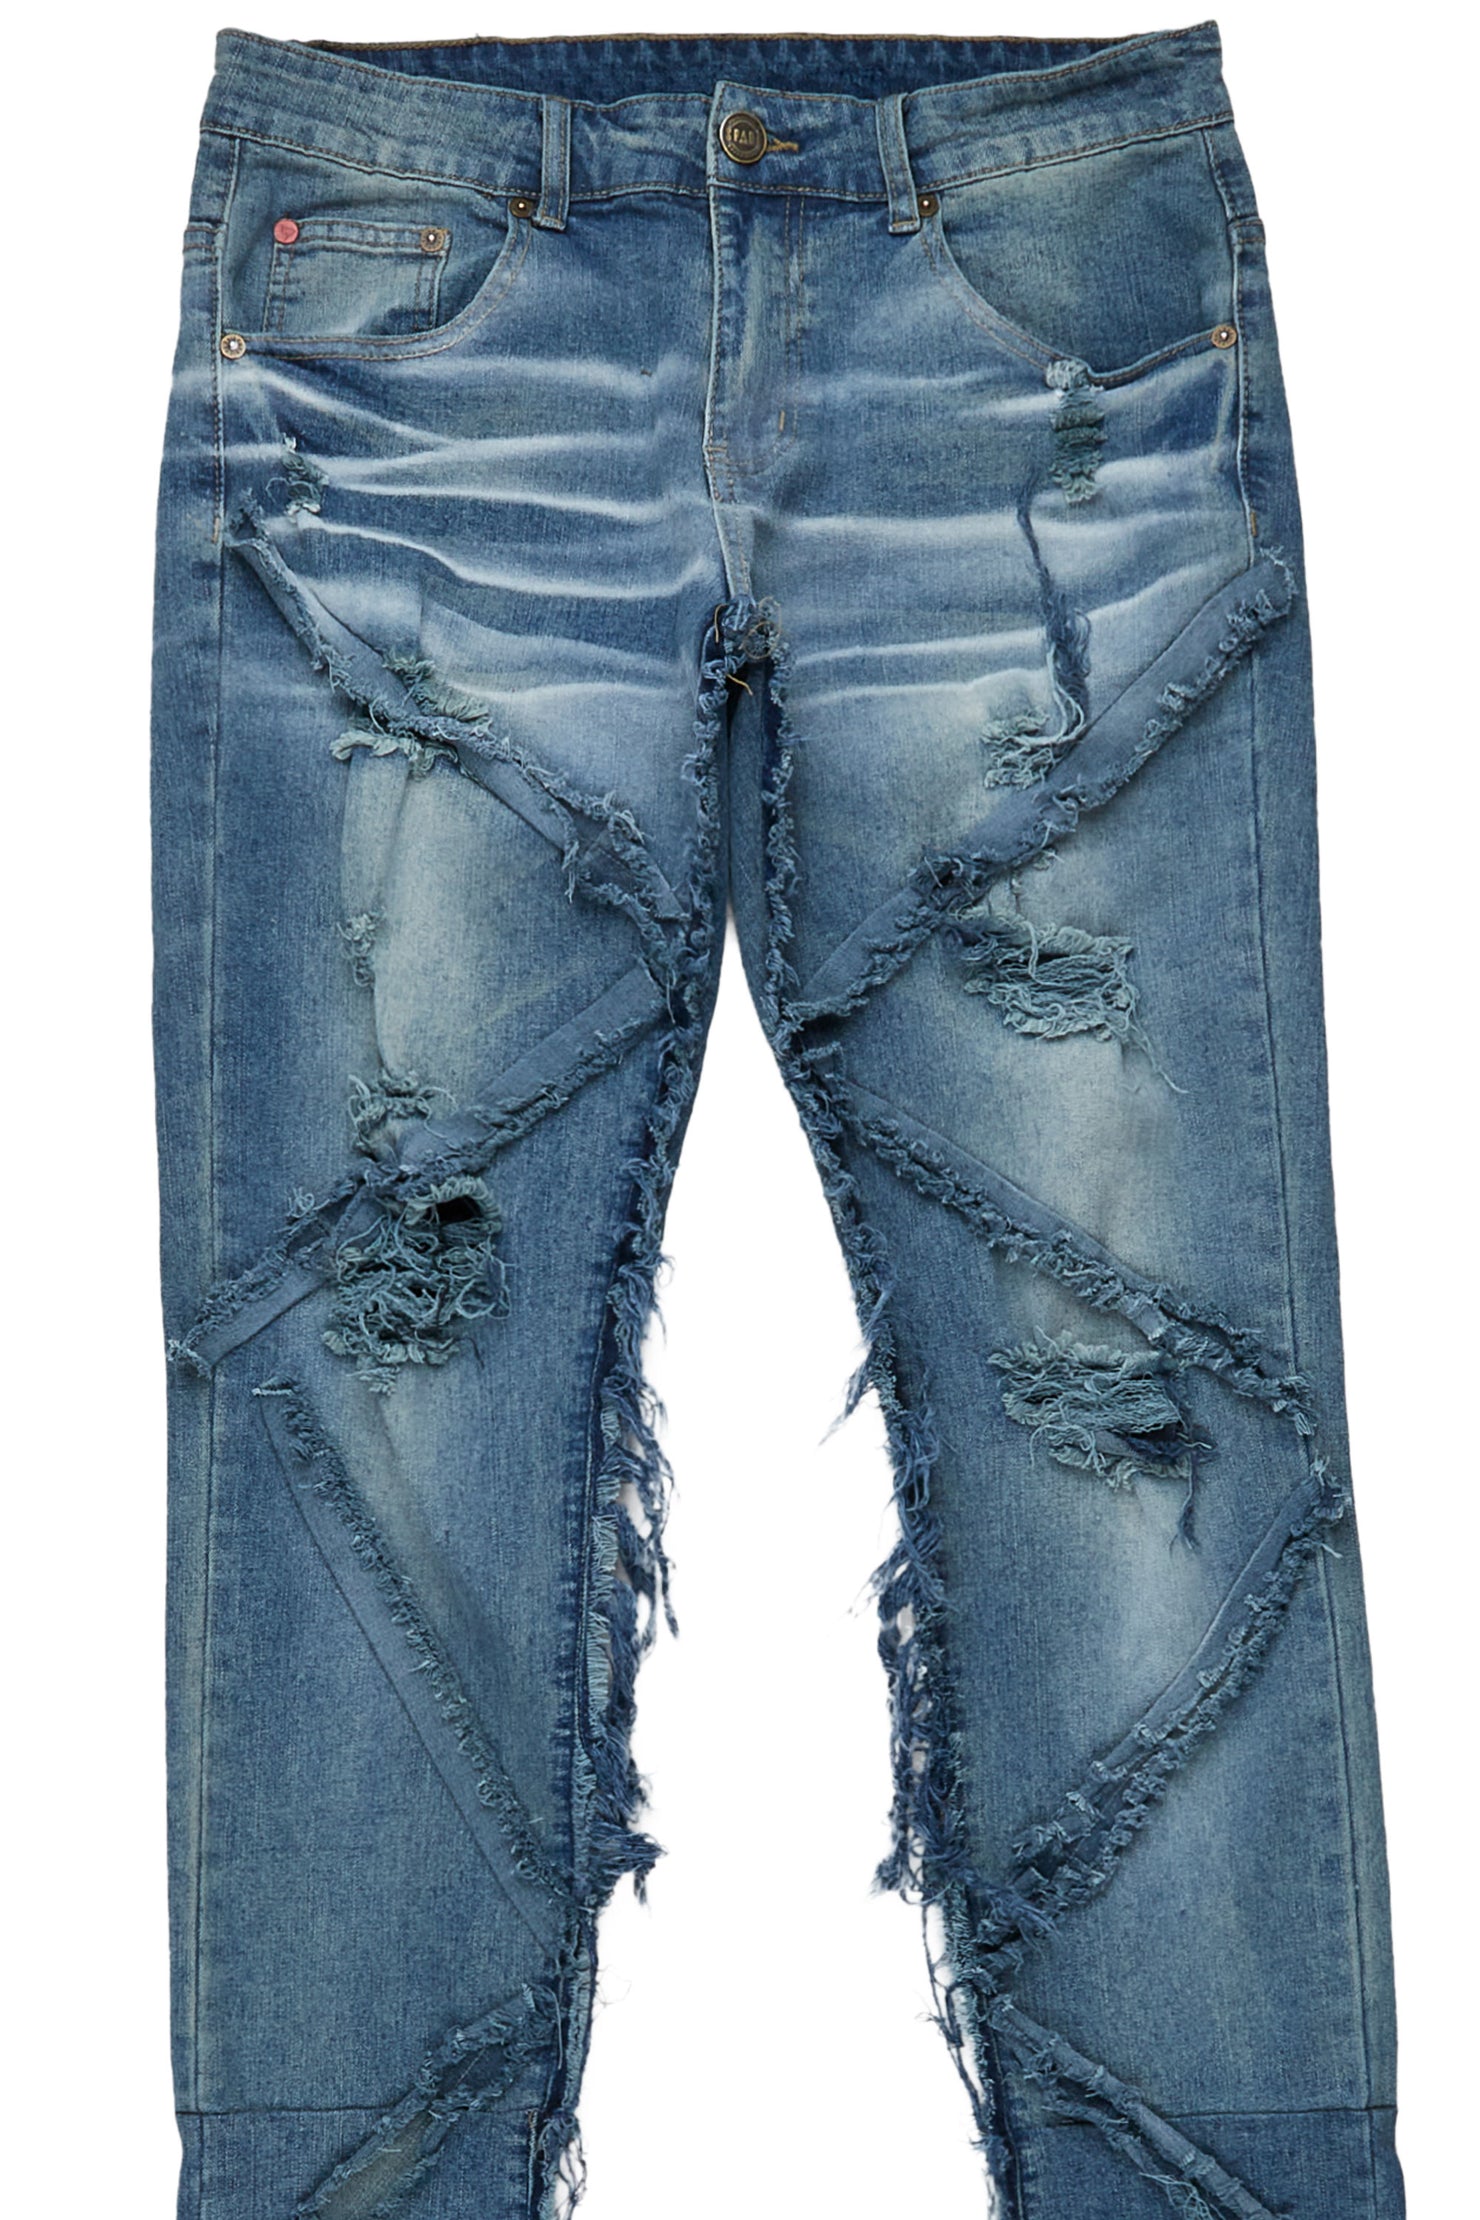 Eben Vintage Blue Super Stacked Flare Jean